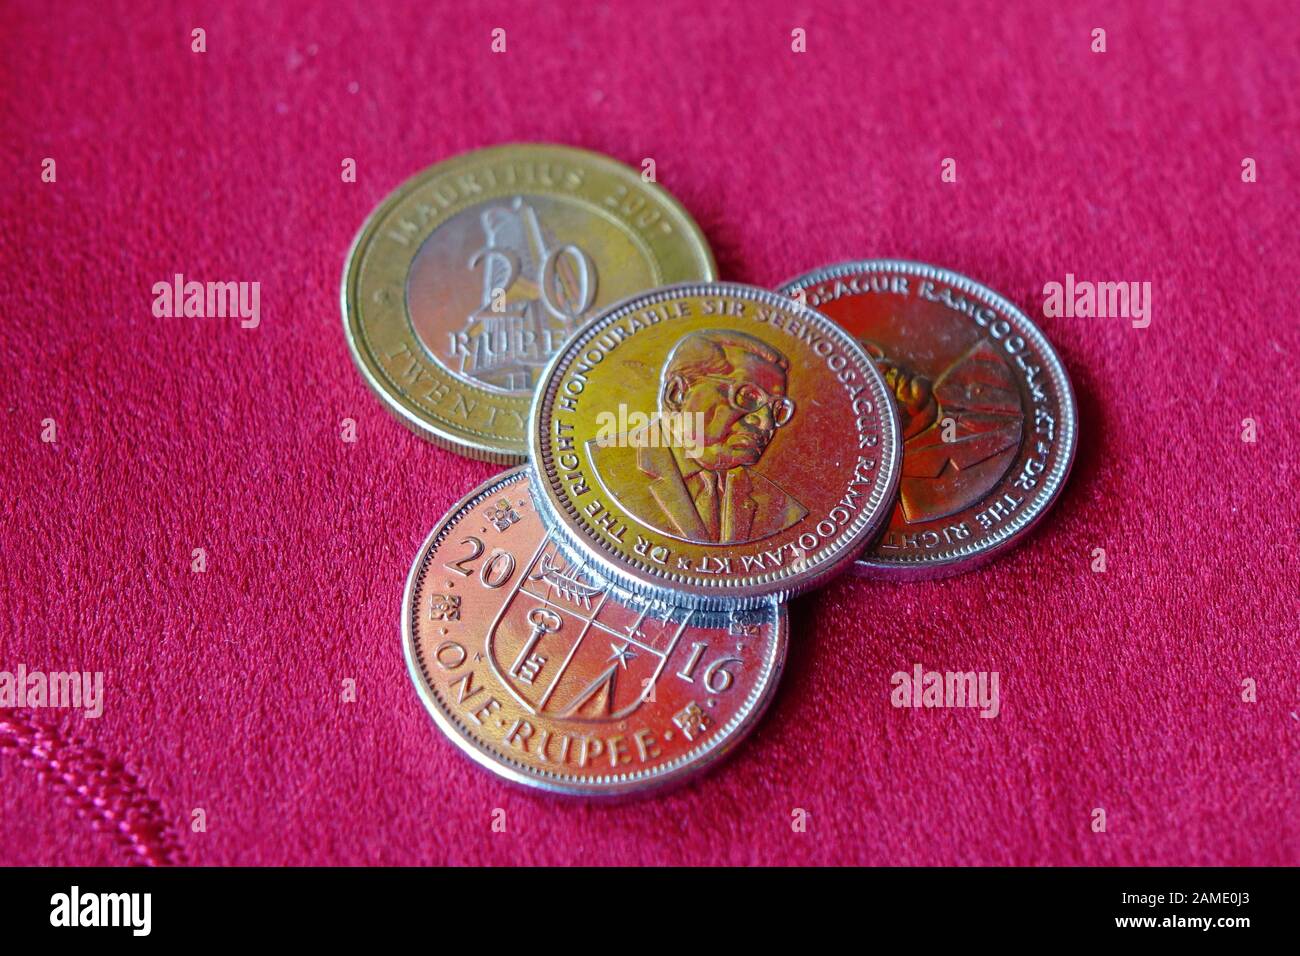 Monete di rupia mauriziana su sfondo rosso. Il codice di valuta per Rupees è MUR, e il simbolo di valuta è ₨. Foto Stock